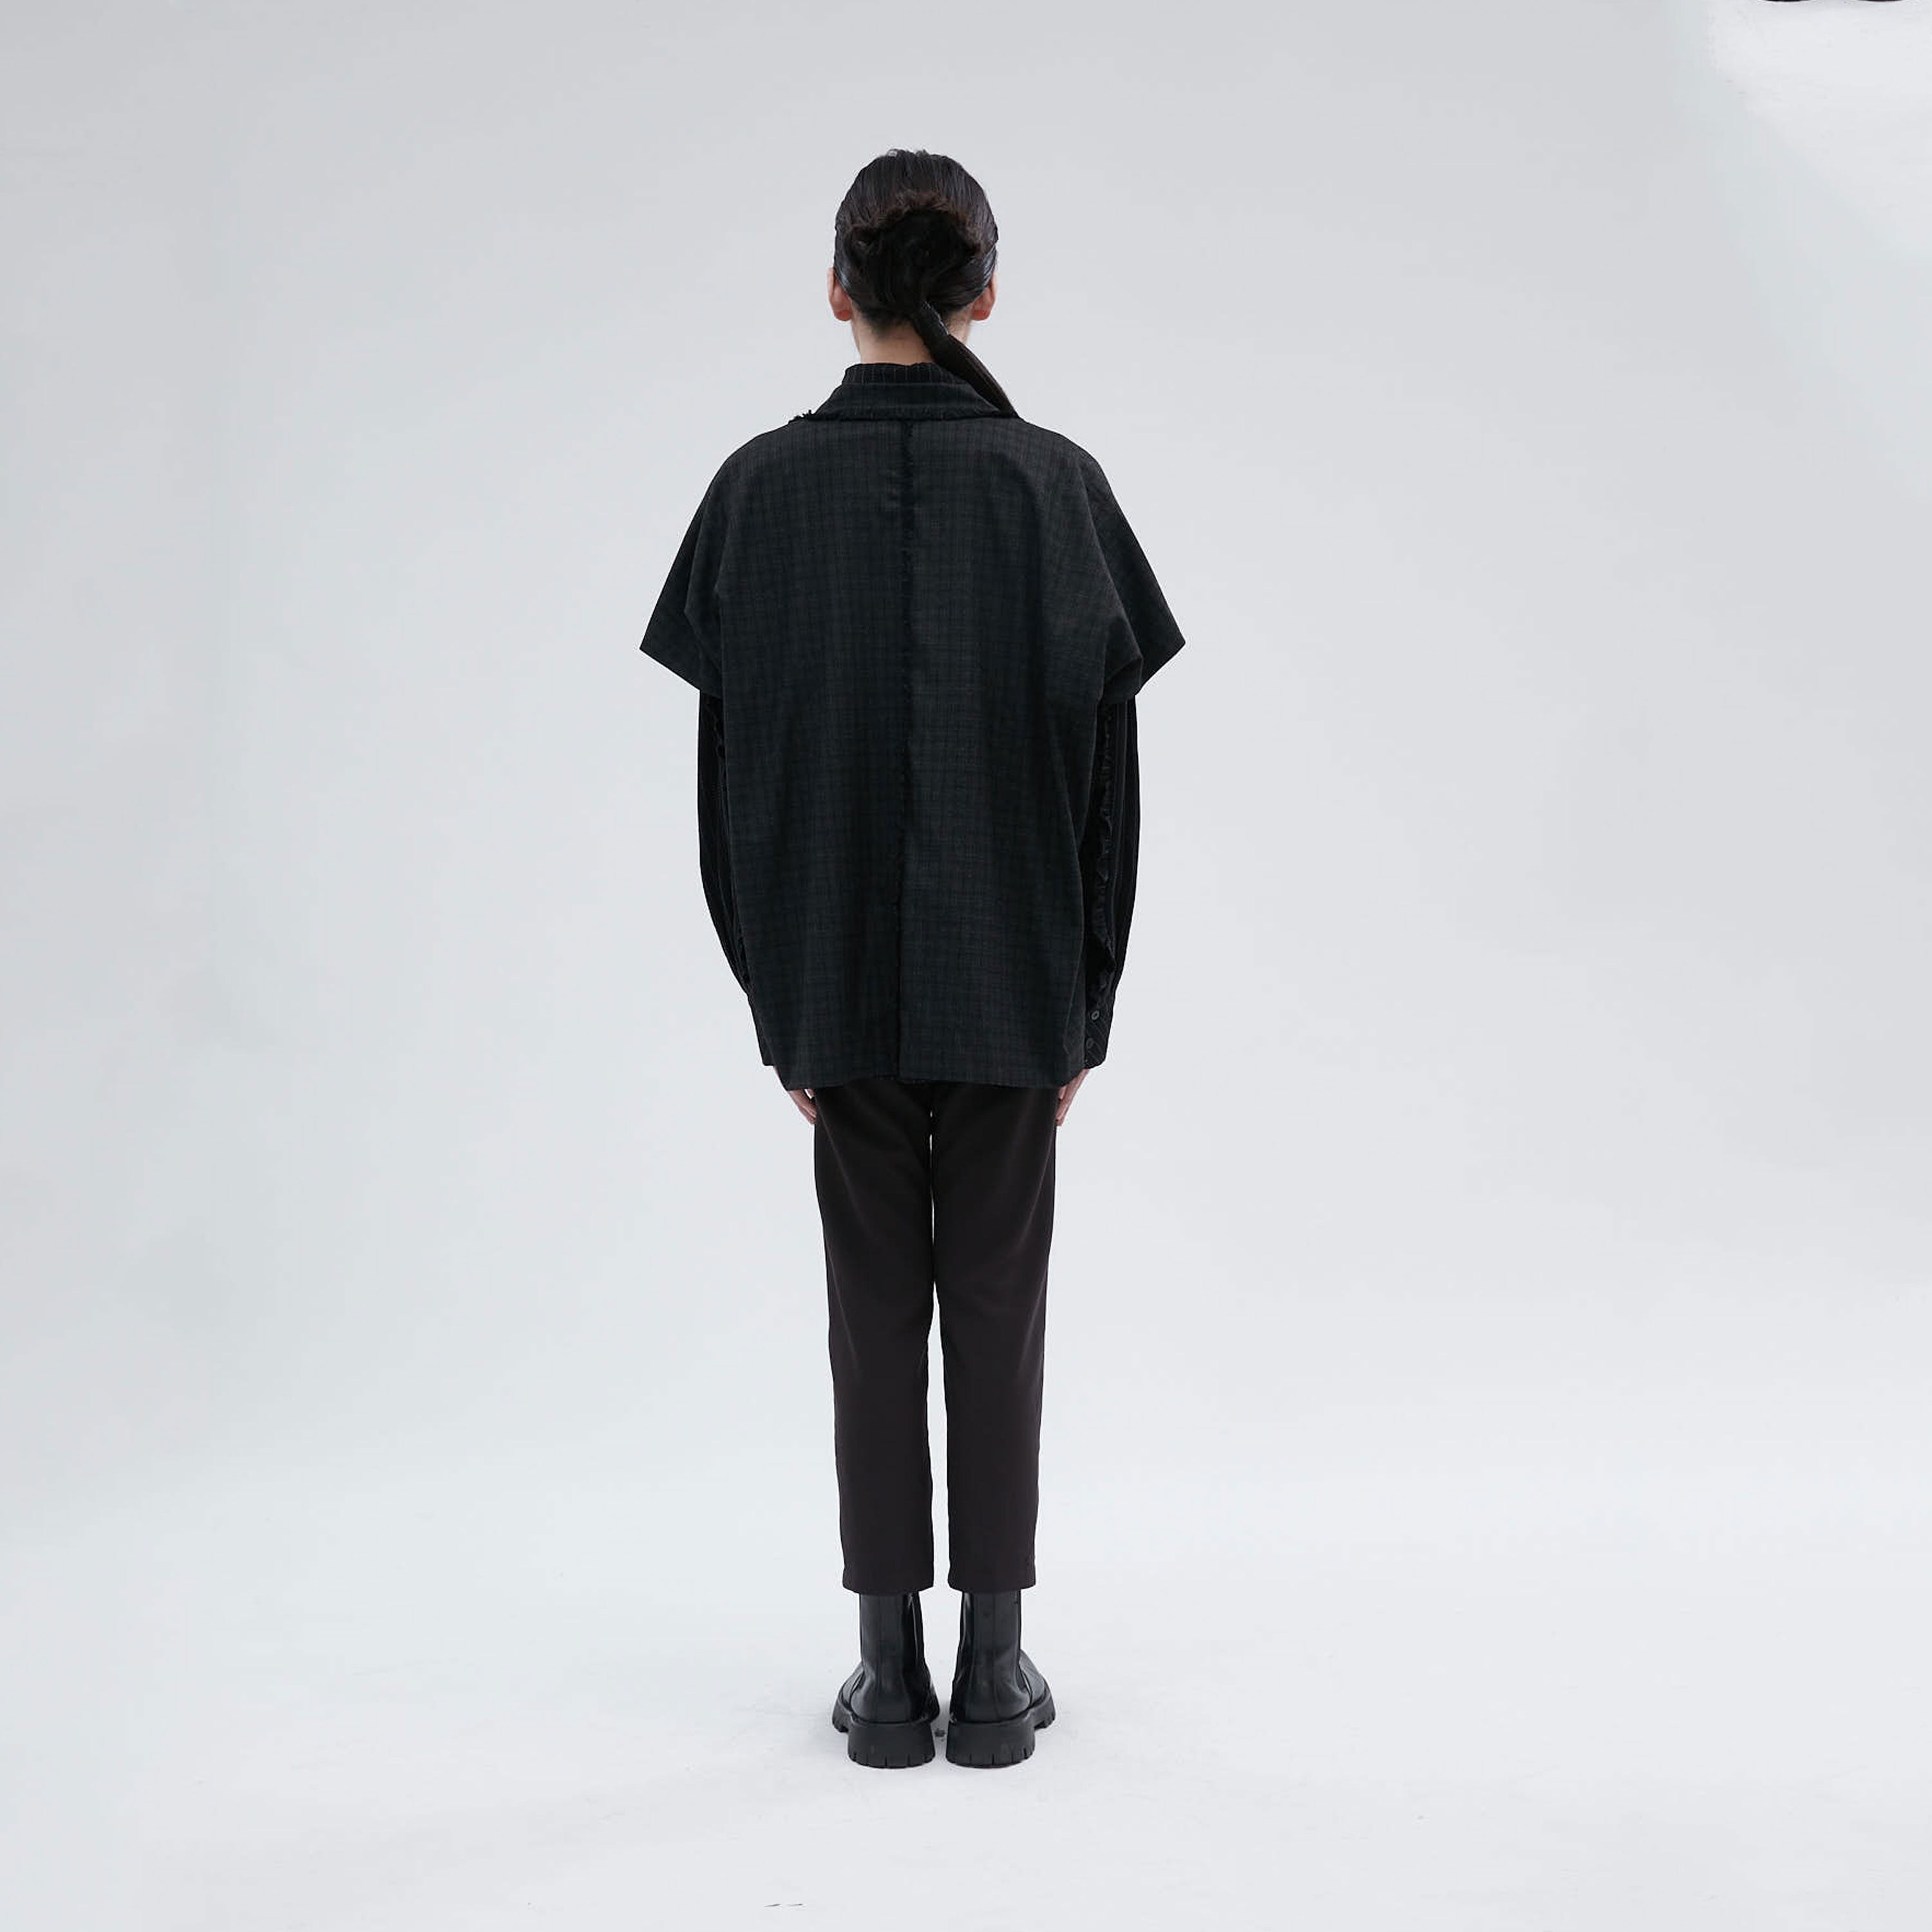 Black short coat